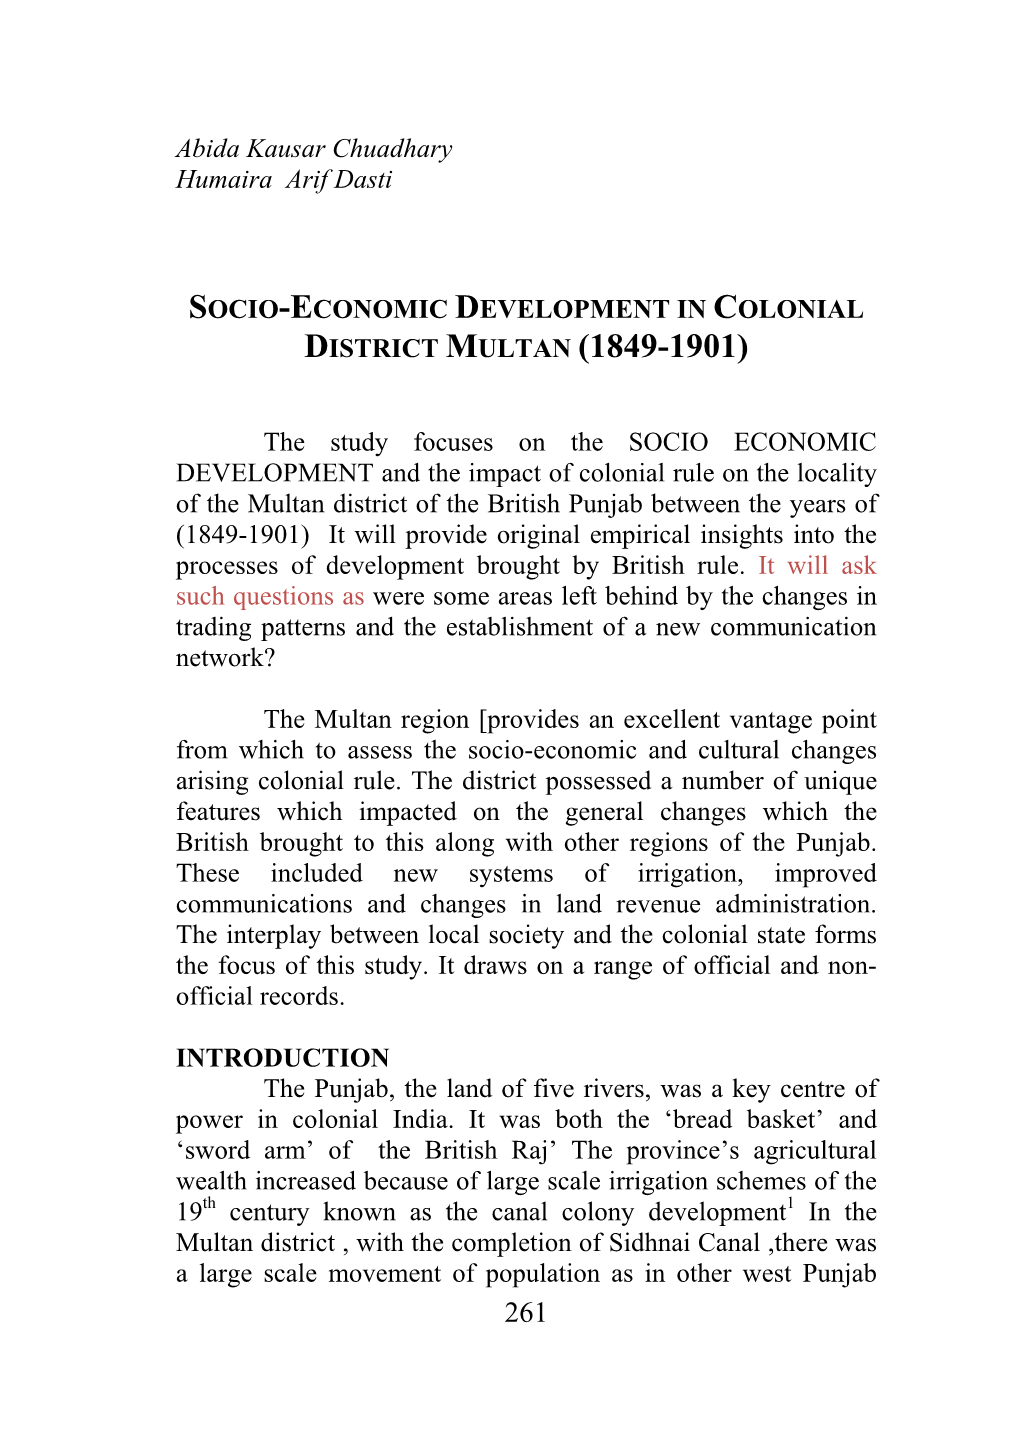 Socio-Economic Development in Colonial District Multan (1849-1901)